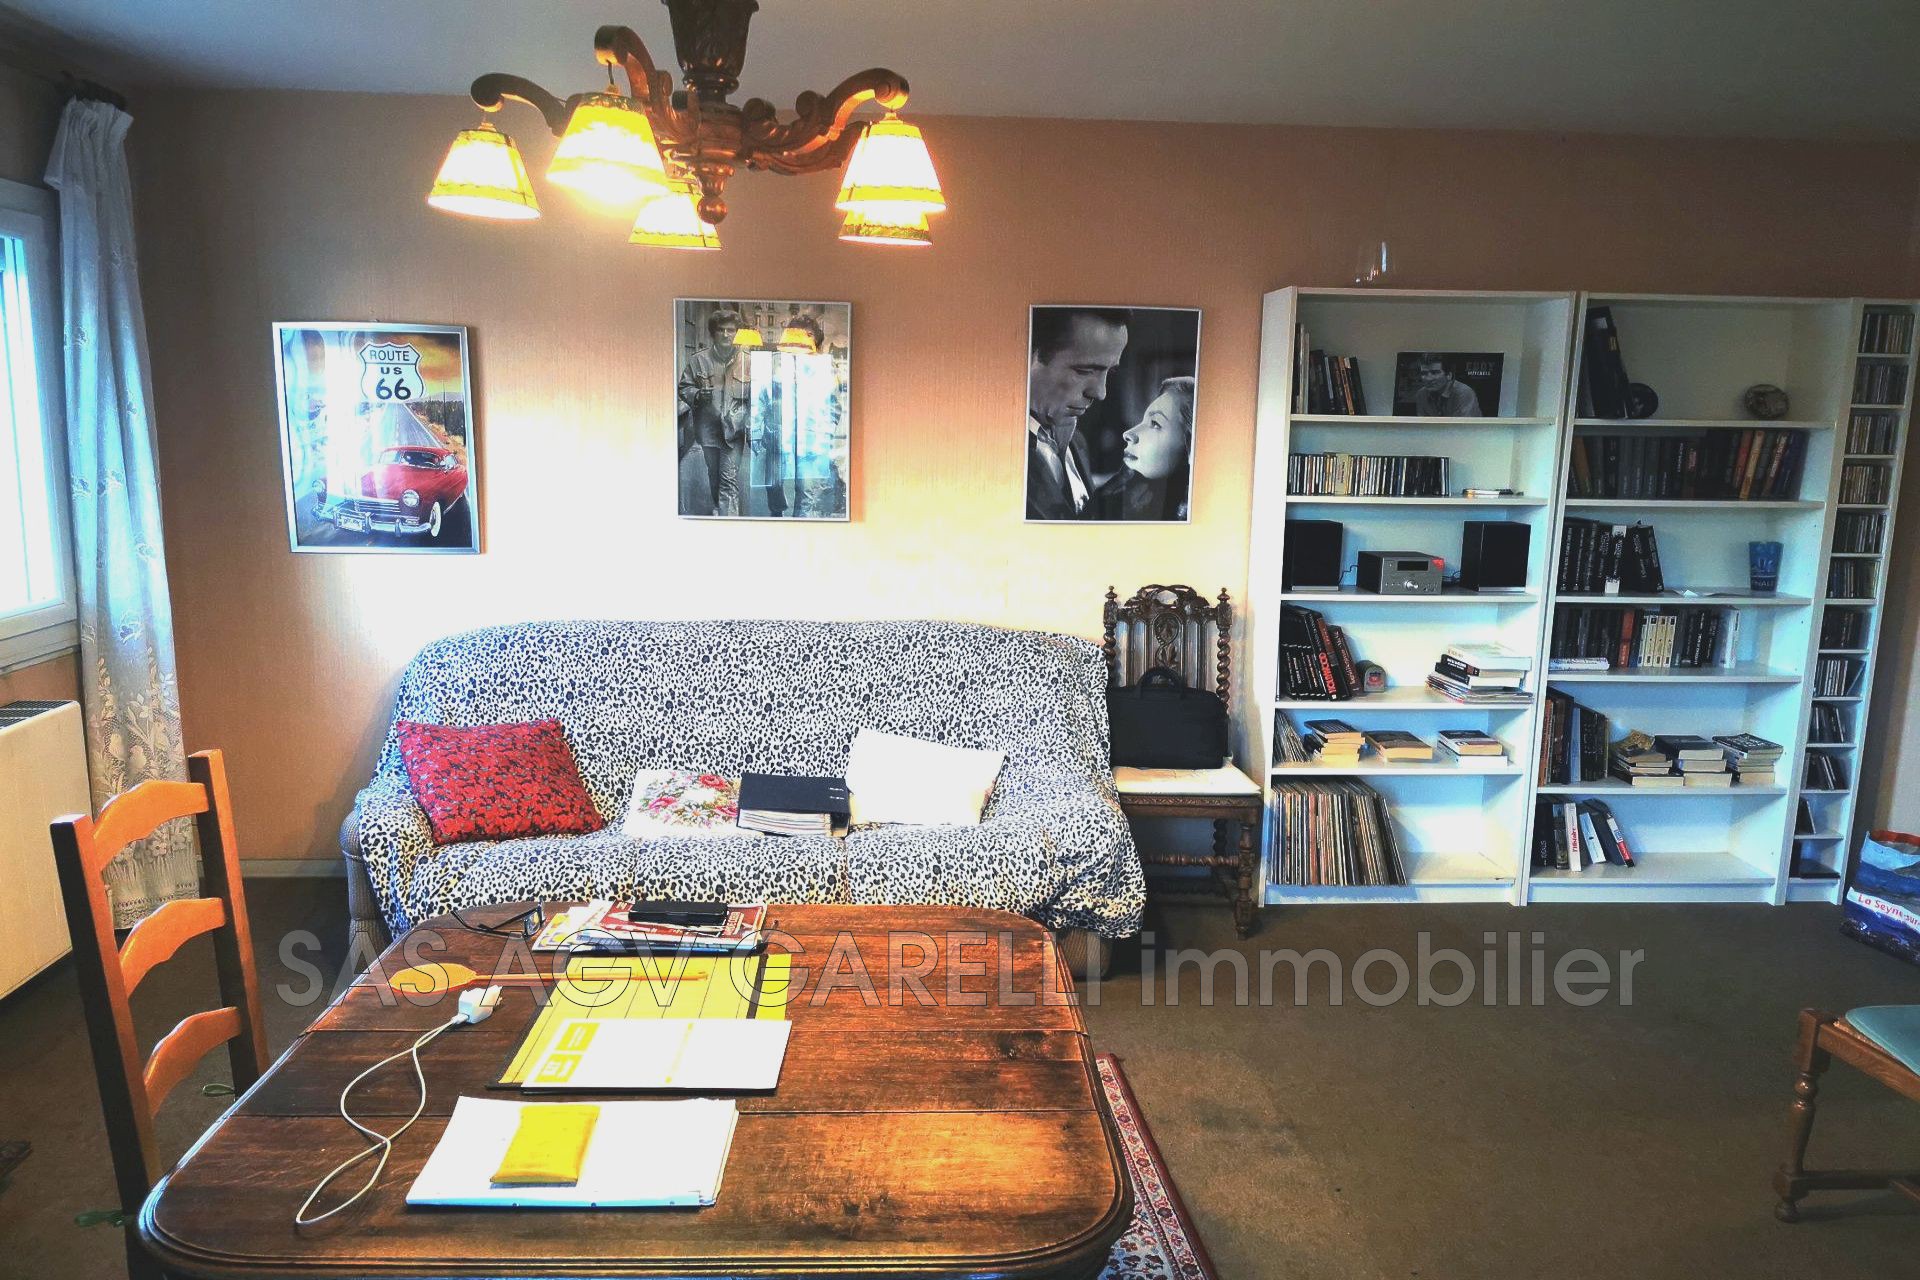 Vente Appartement 69m² 3 Pièces à Toulon (83000) - Agv Garelli Immobilier